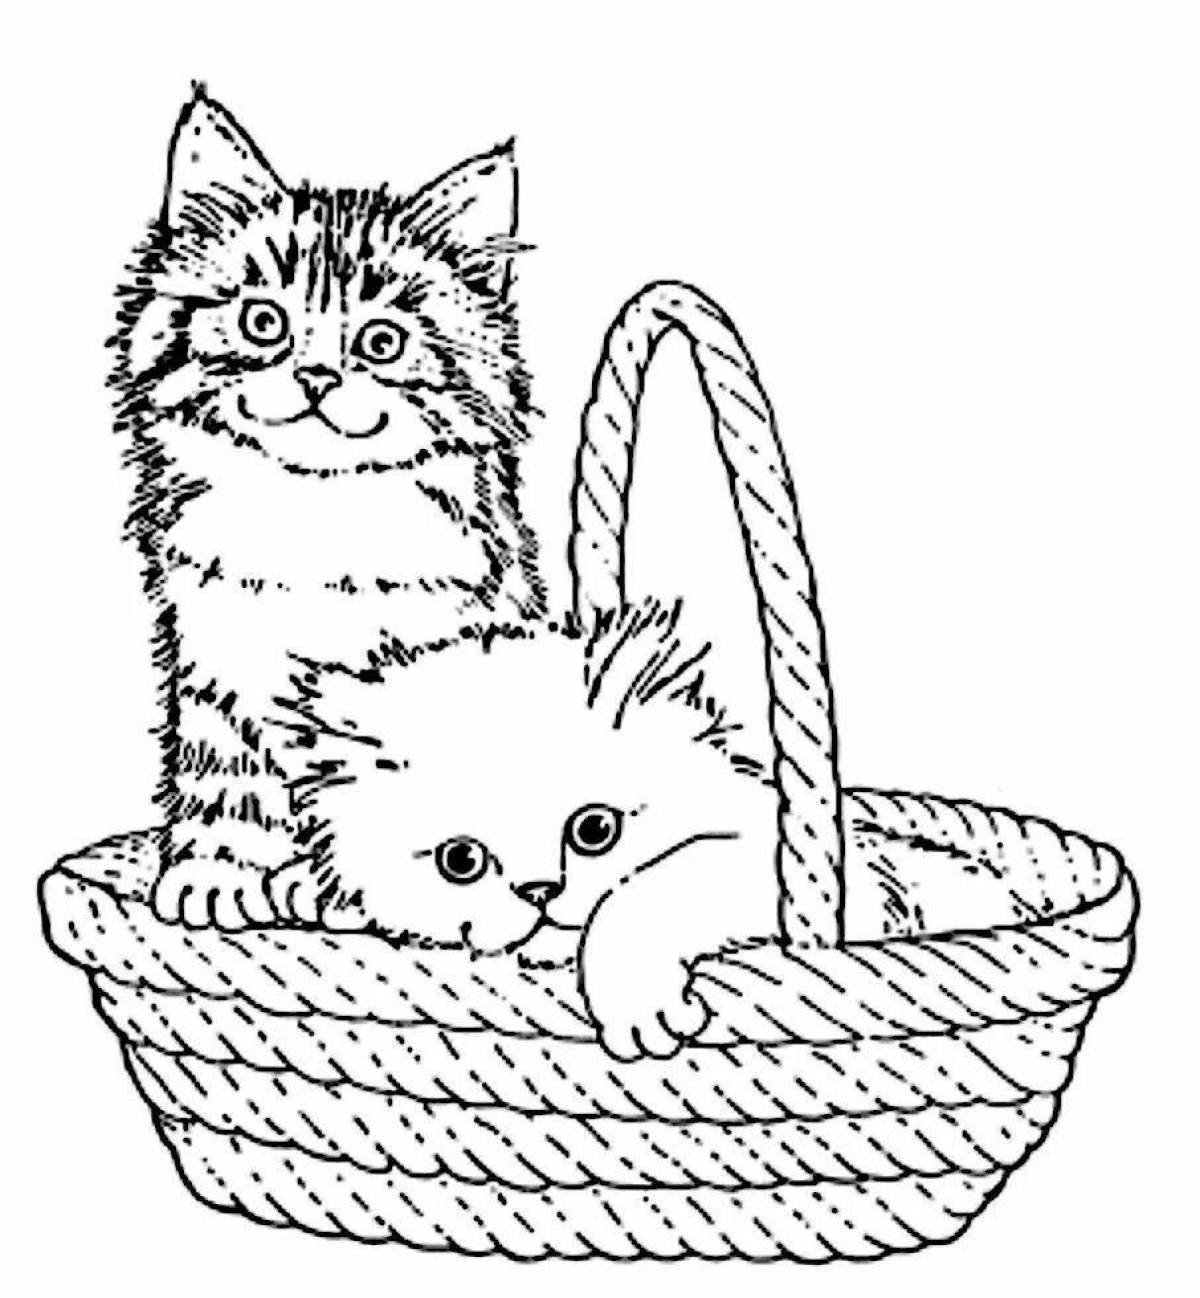 Kittens in a basket #10